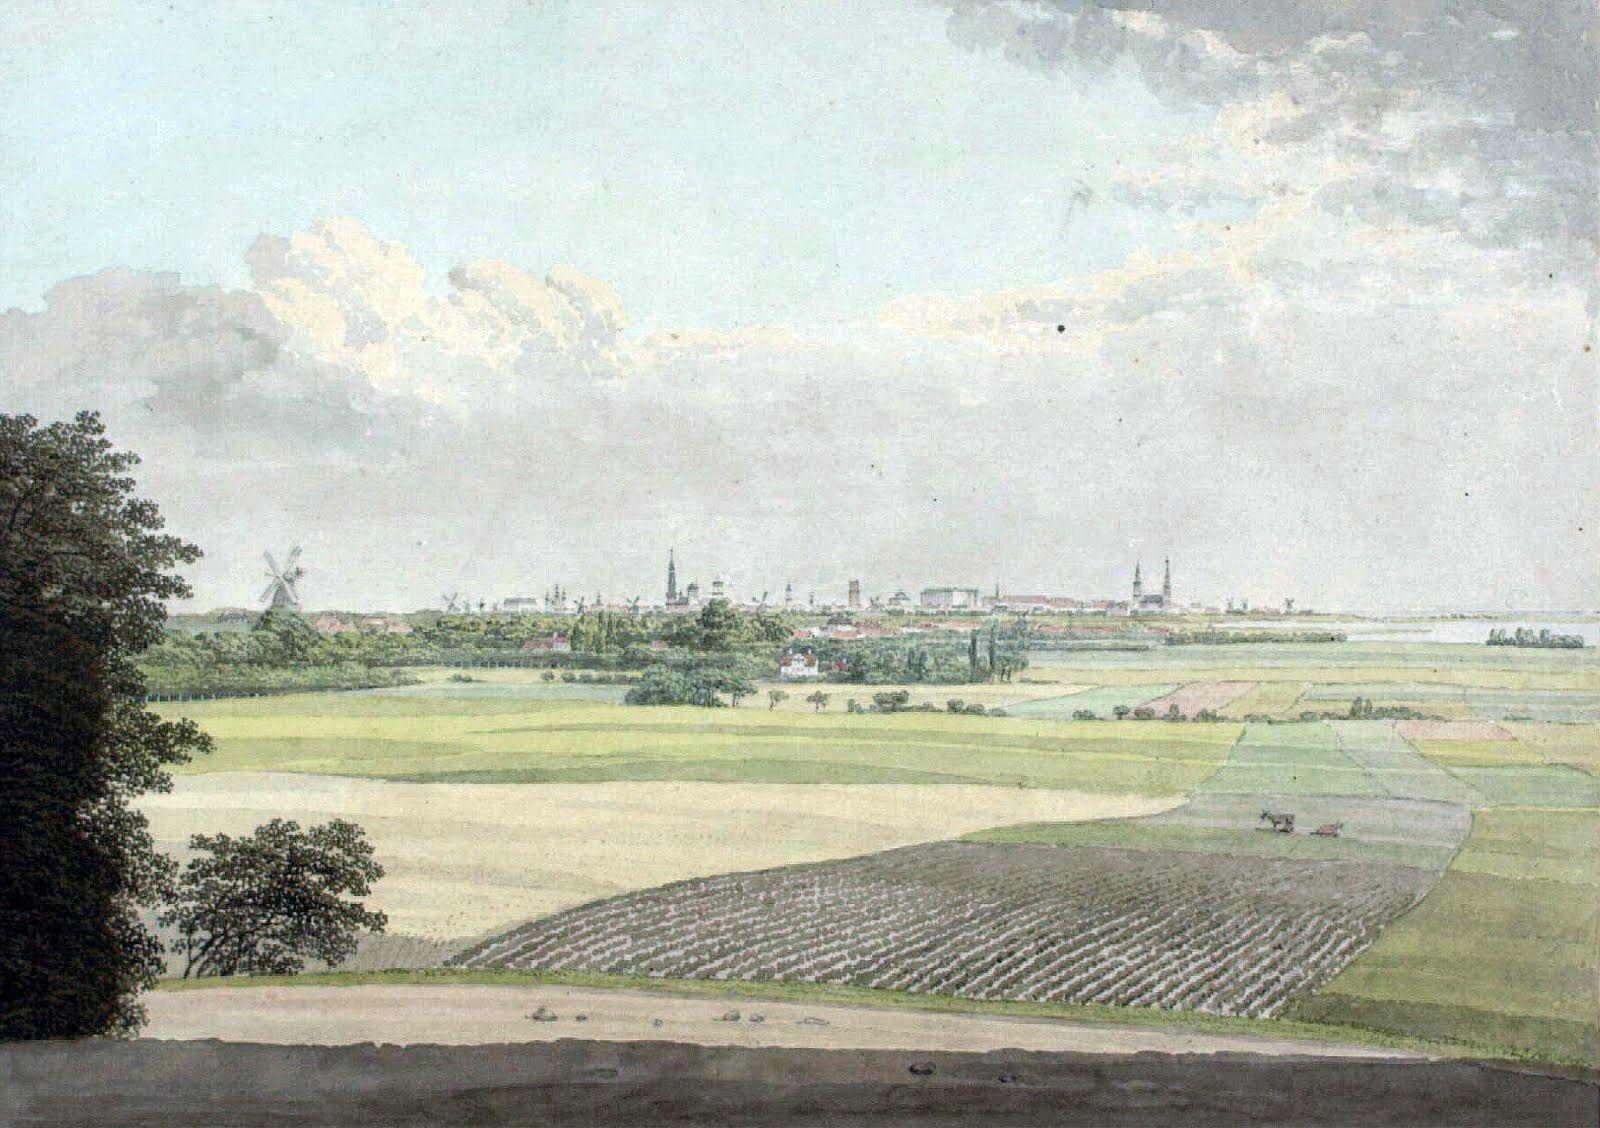 København på koleraens tid i 1850’erne – set fra Valby Bakke. Foto: Det kgl. Bibliotek